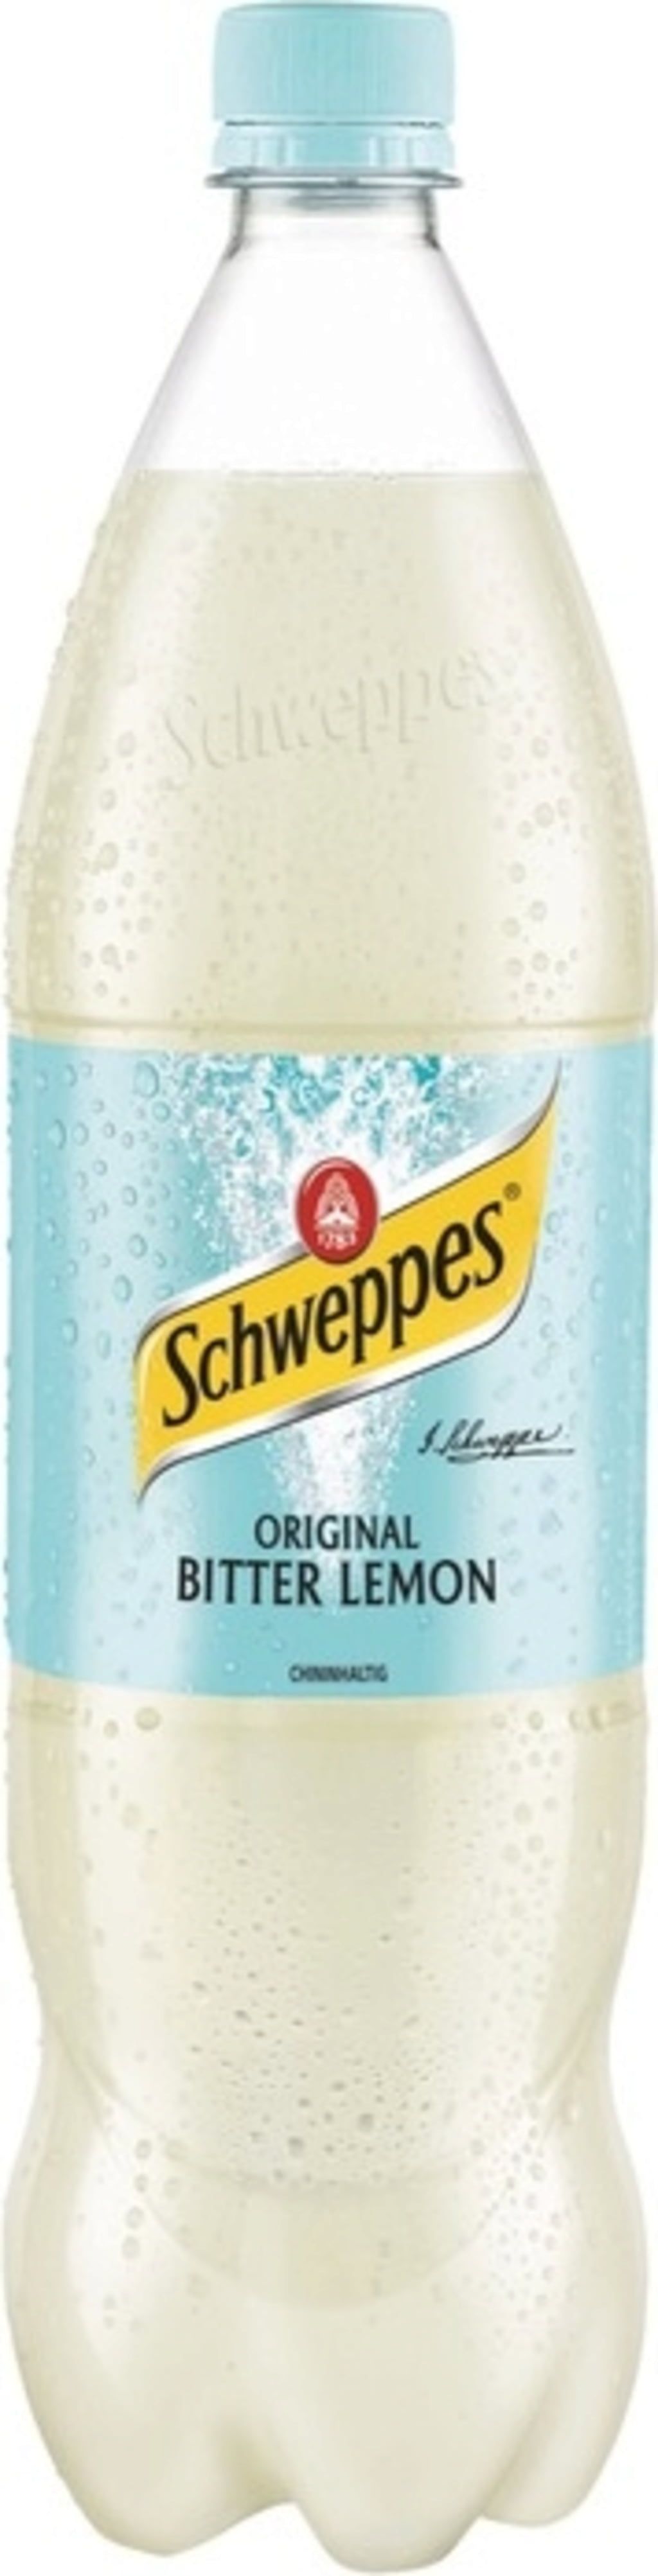 Schweppes Traditional Pink Lemonade Bottle 1.25L